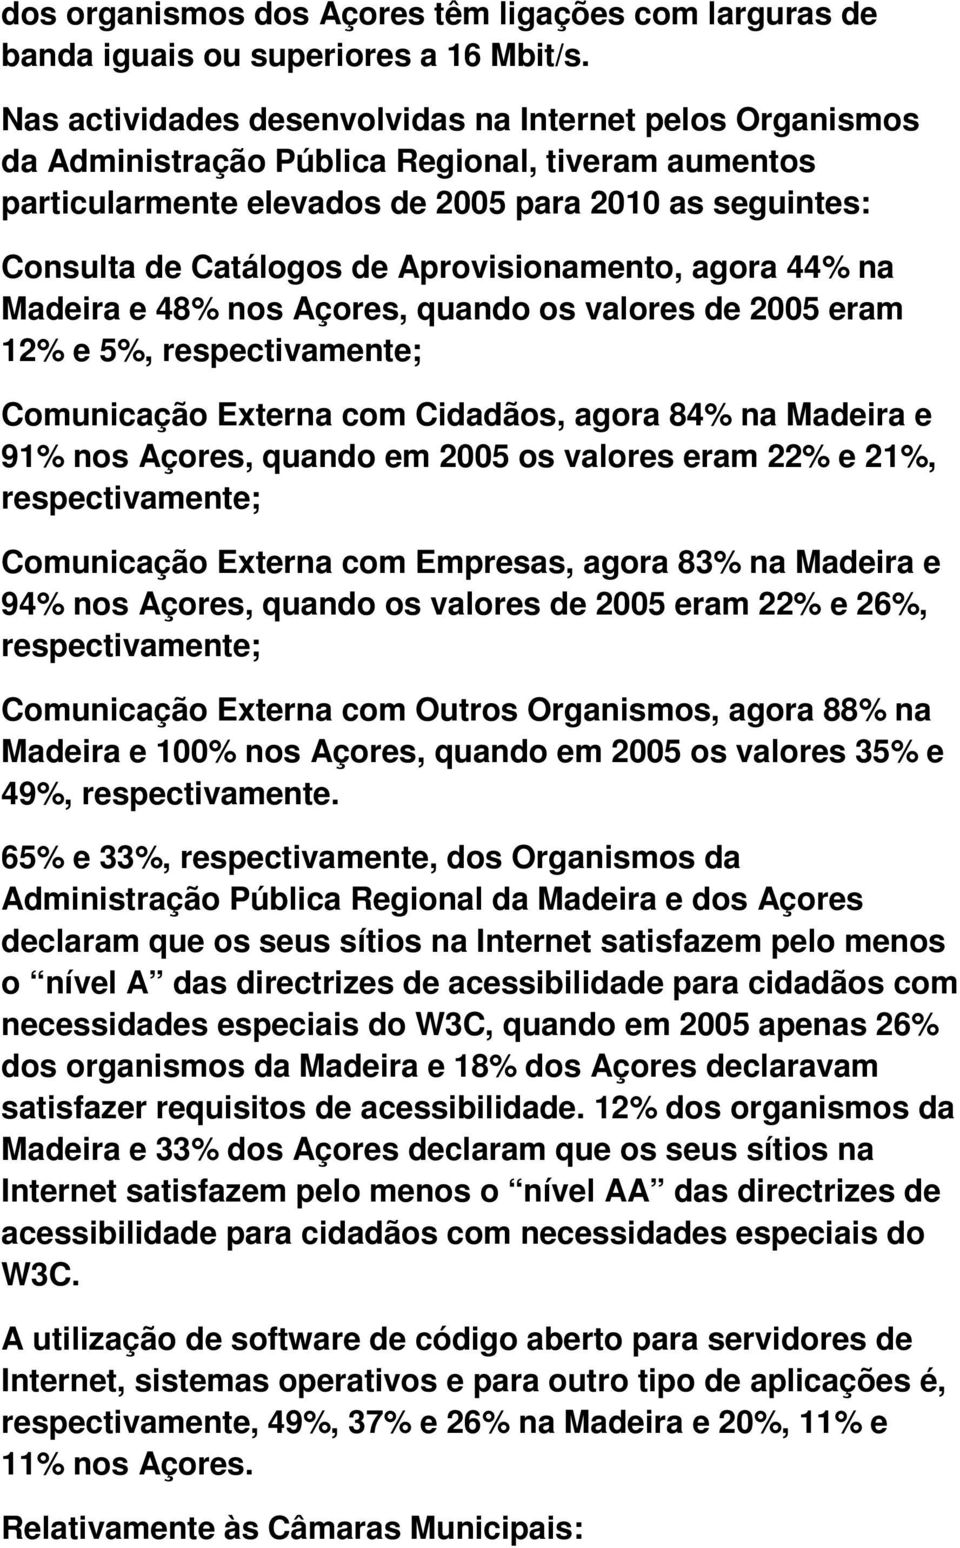 Aprovisionamento, agora 44% na Madeira e 48% nos Açores, quando os valores de 2005 eram 12% e 5%, respectivamente; Comunicação Externa com Cidadãos, agora 84% na Madeira e 91% nos Açores, quando em